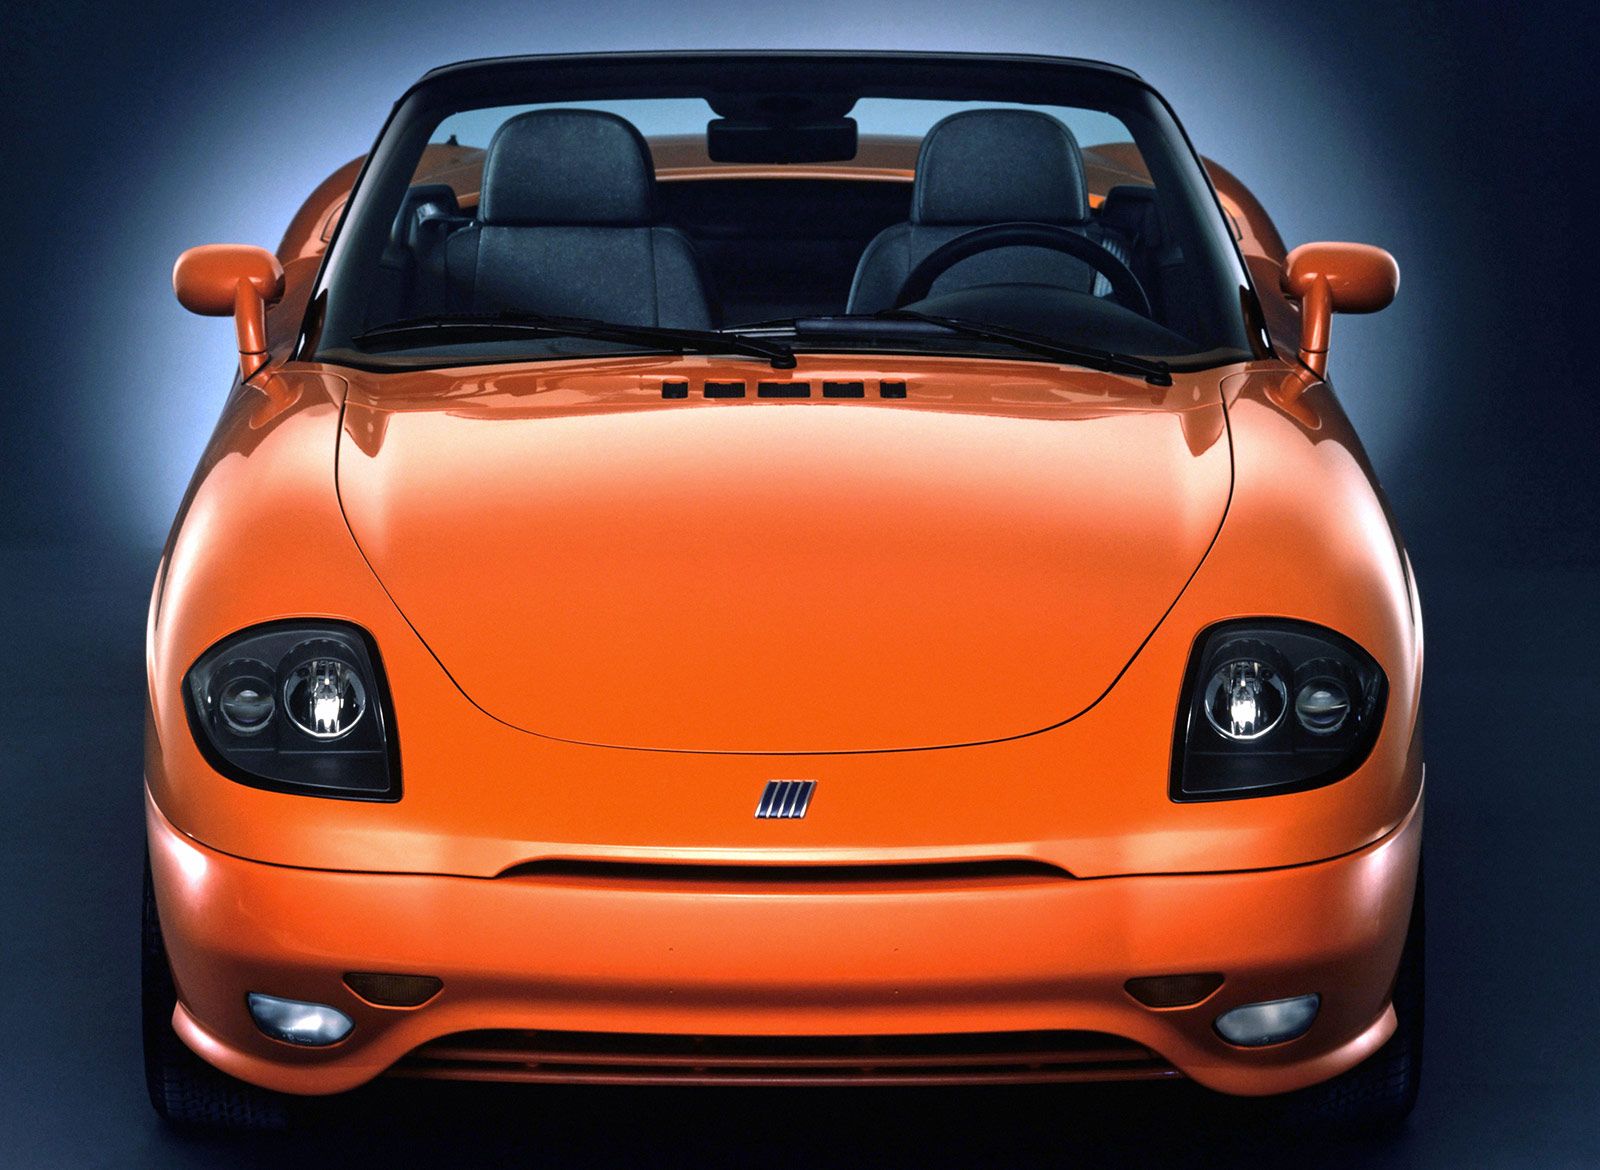 Foto ufficiale che ritrae il frontale della Fiat Barchetta prima serie in colore arancione aragosta